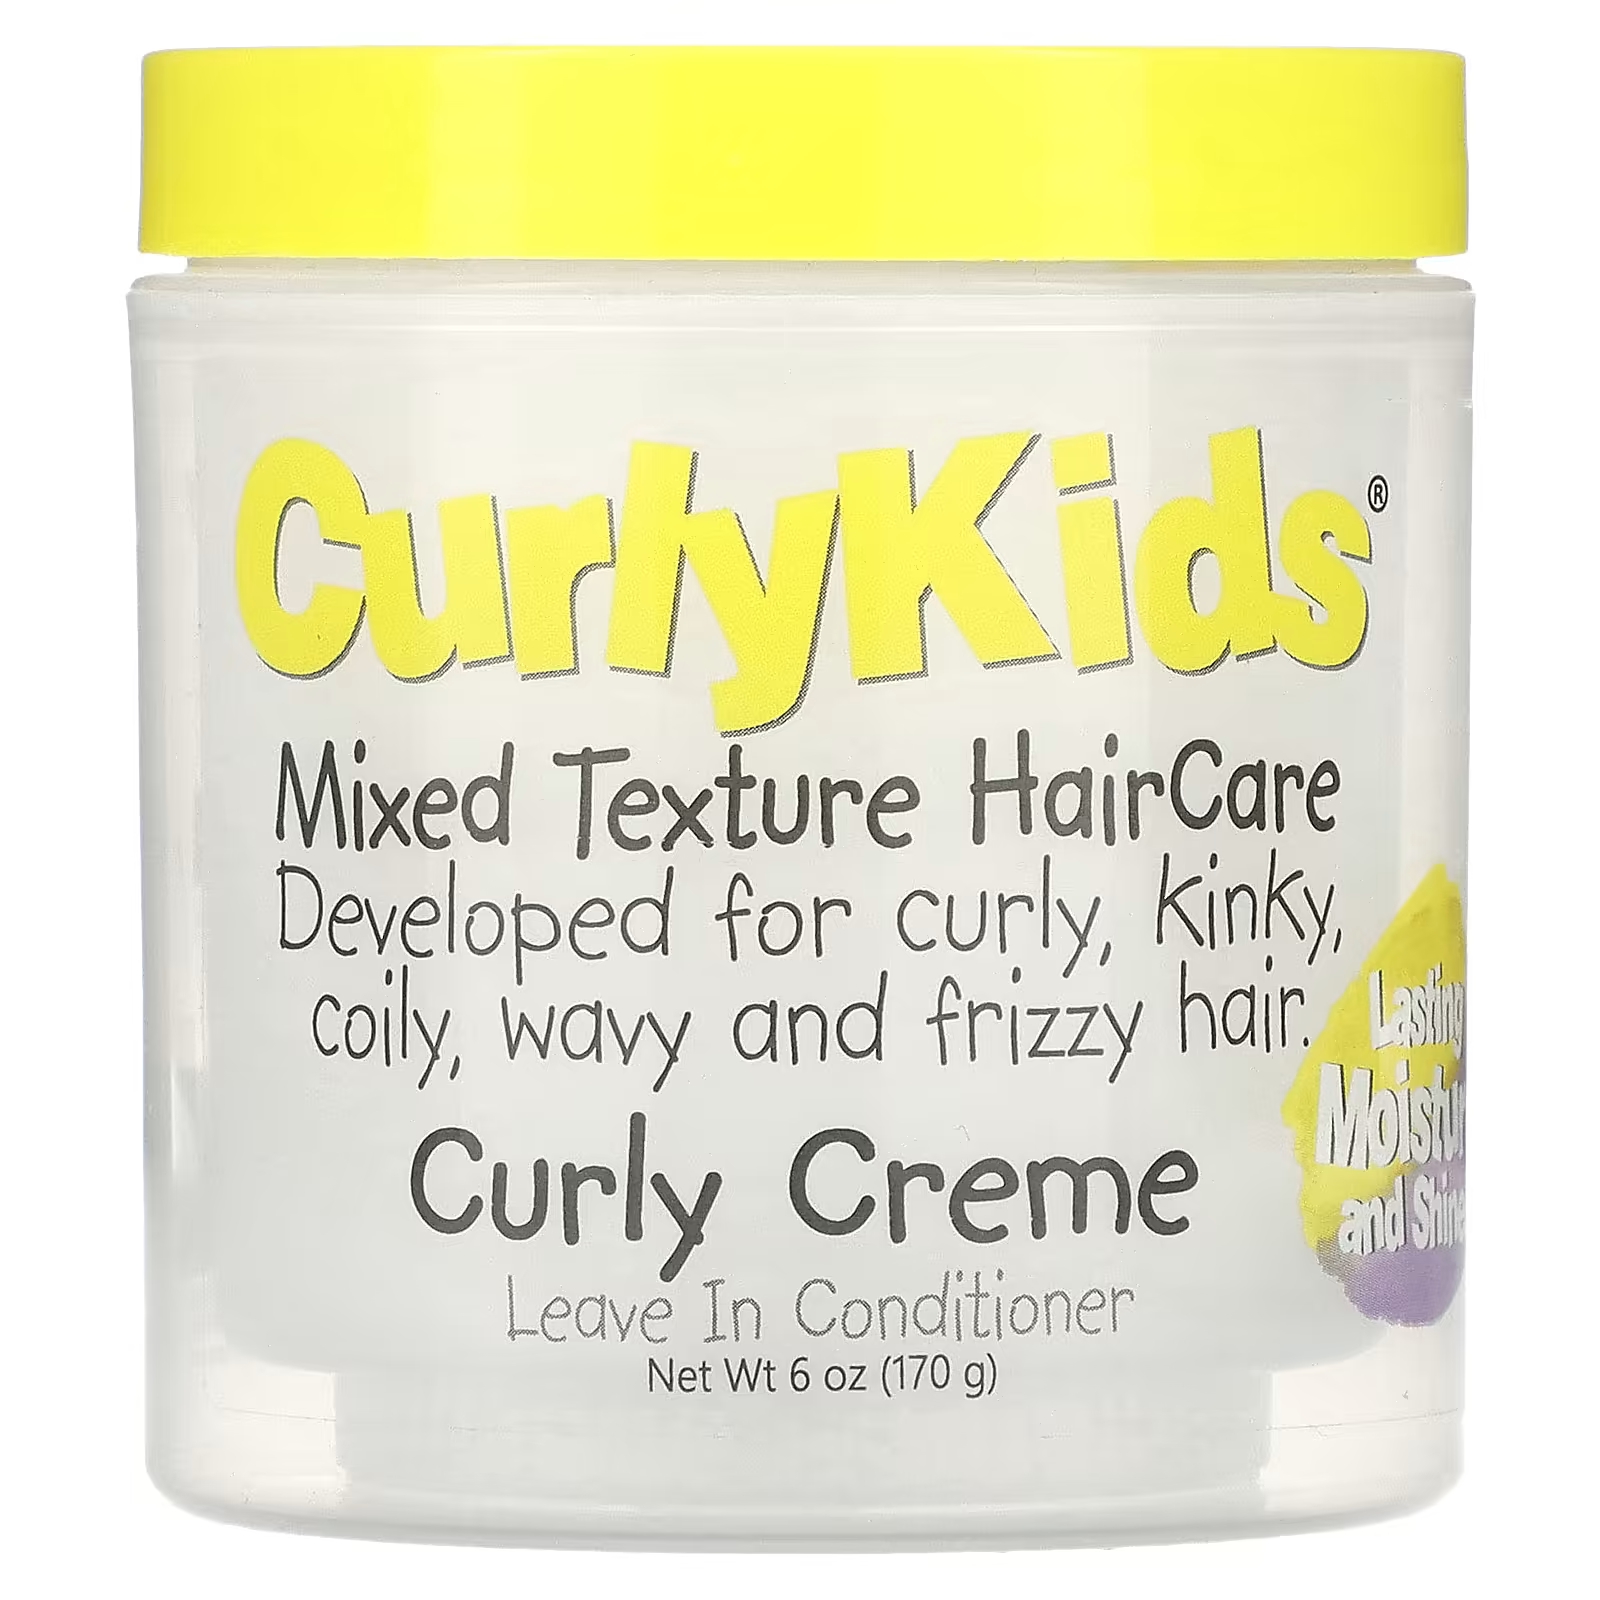 Кондиционер CurlyKids Curly Creme, 170 г